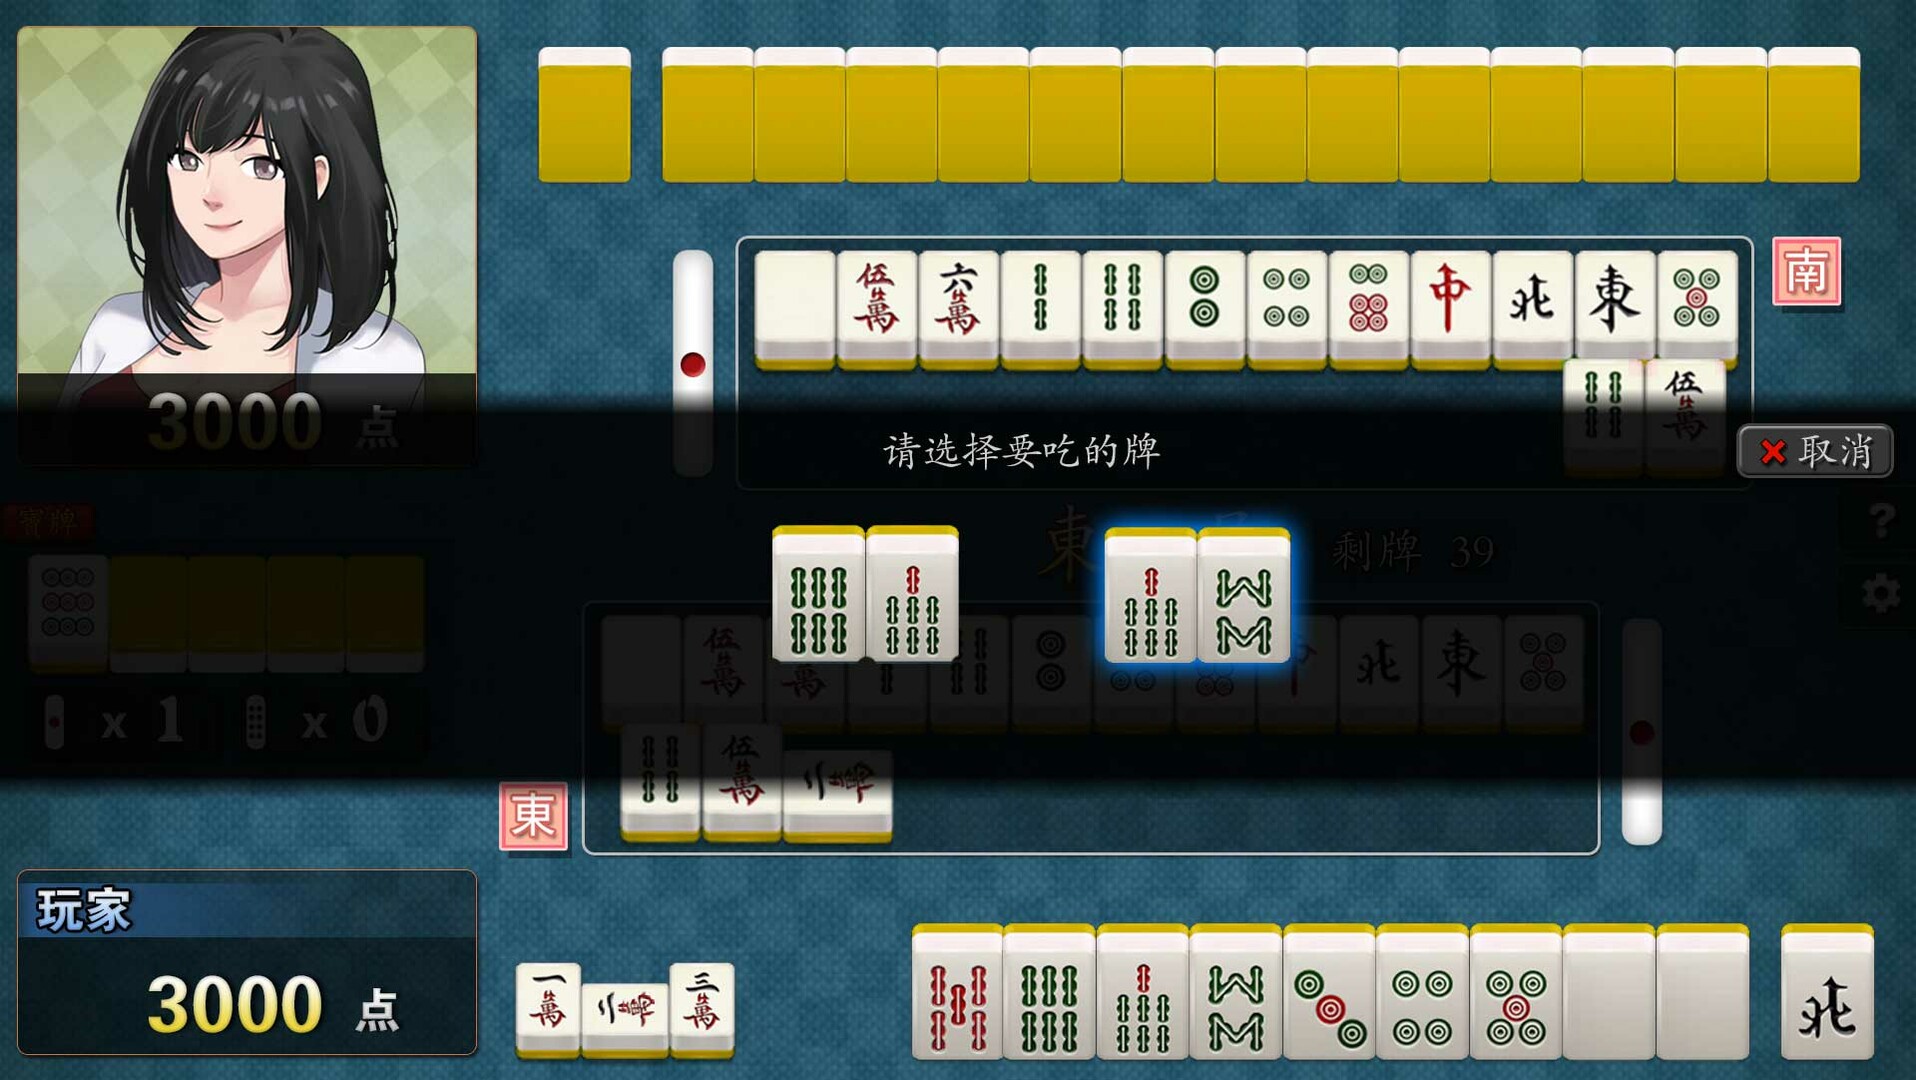 勾八麻将(J8 Mahjong) [V3.0.0] [J8 Games]